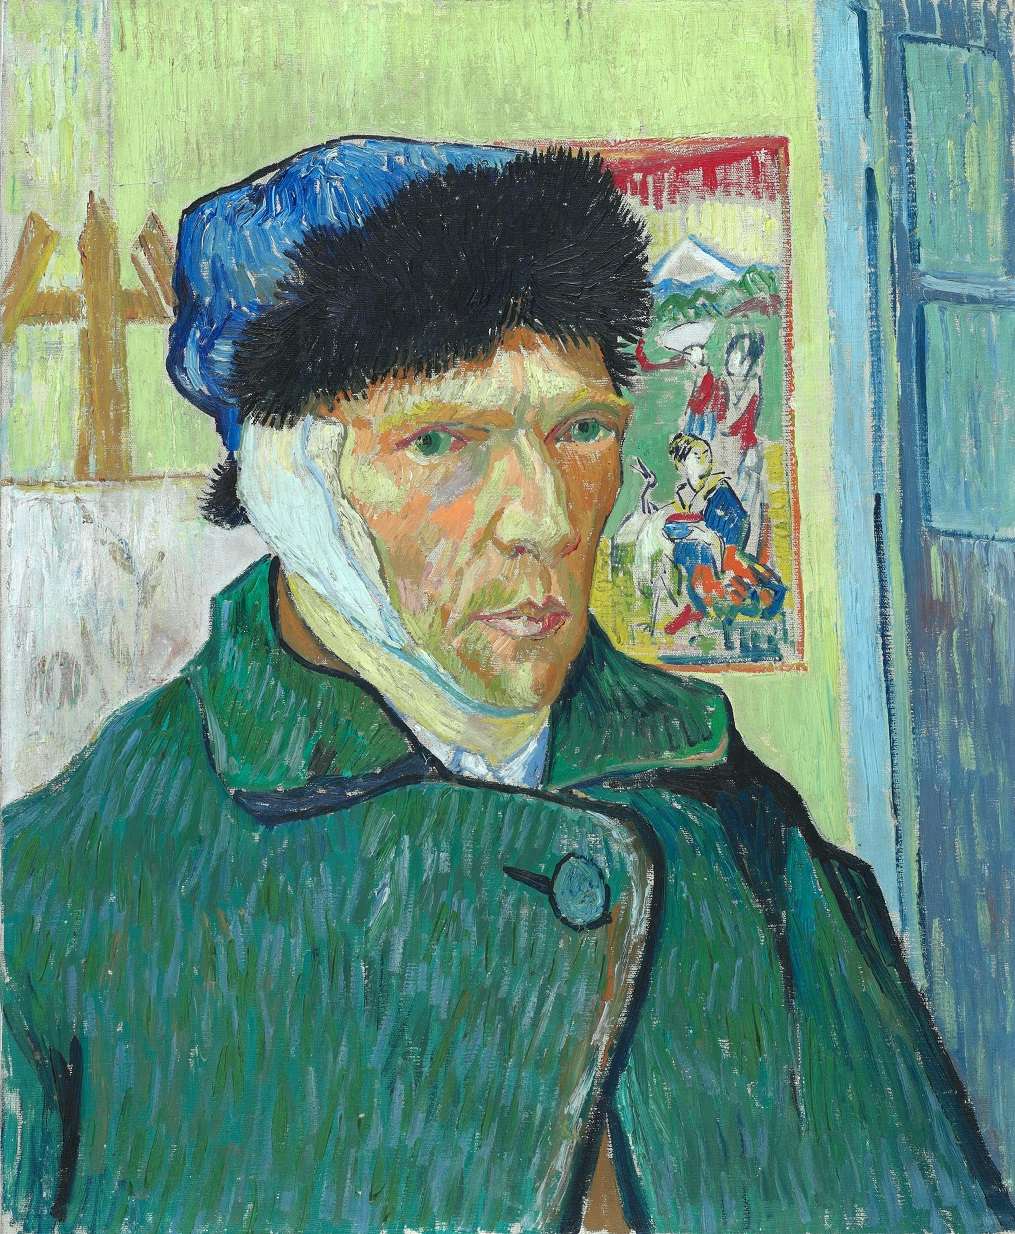 ゴッホの自画像に特化した世界初の展覧会。「Van Gogh Self 